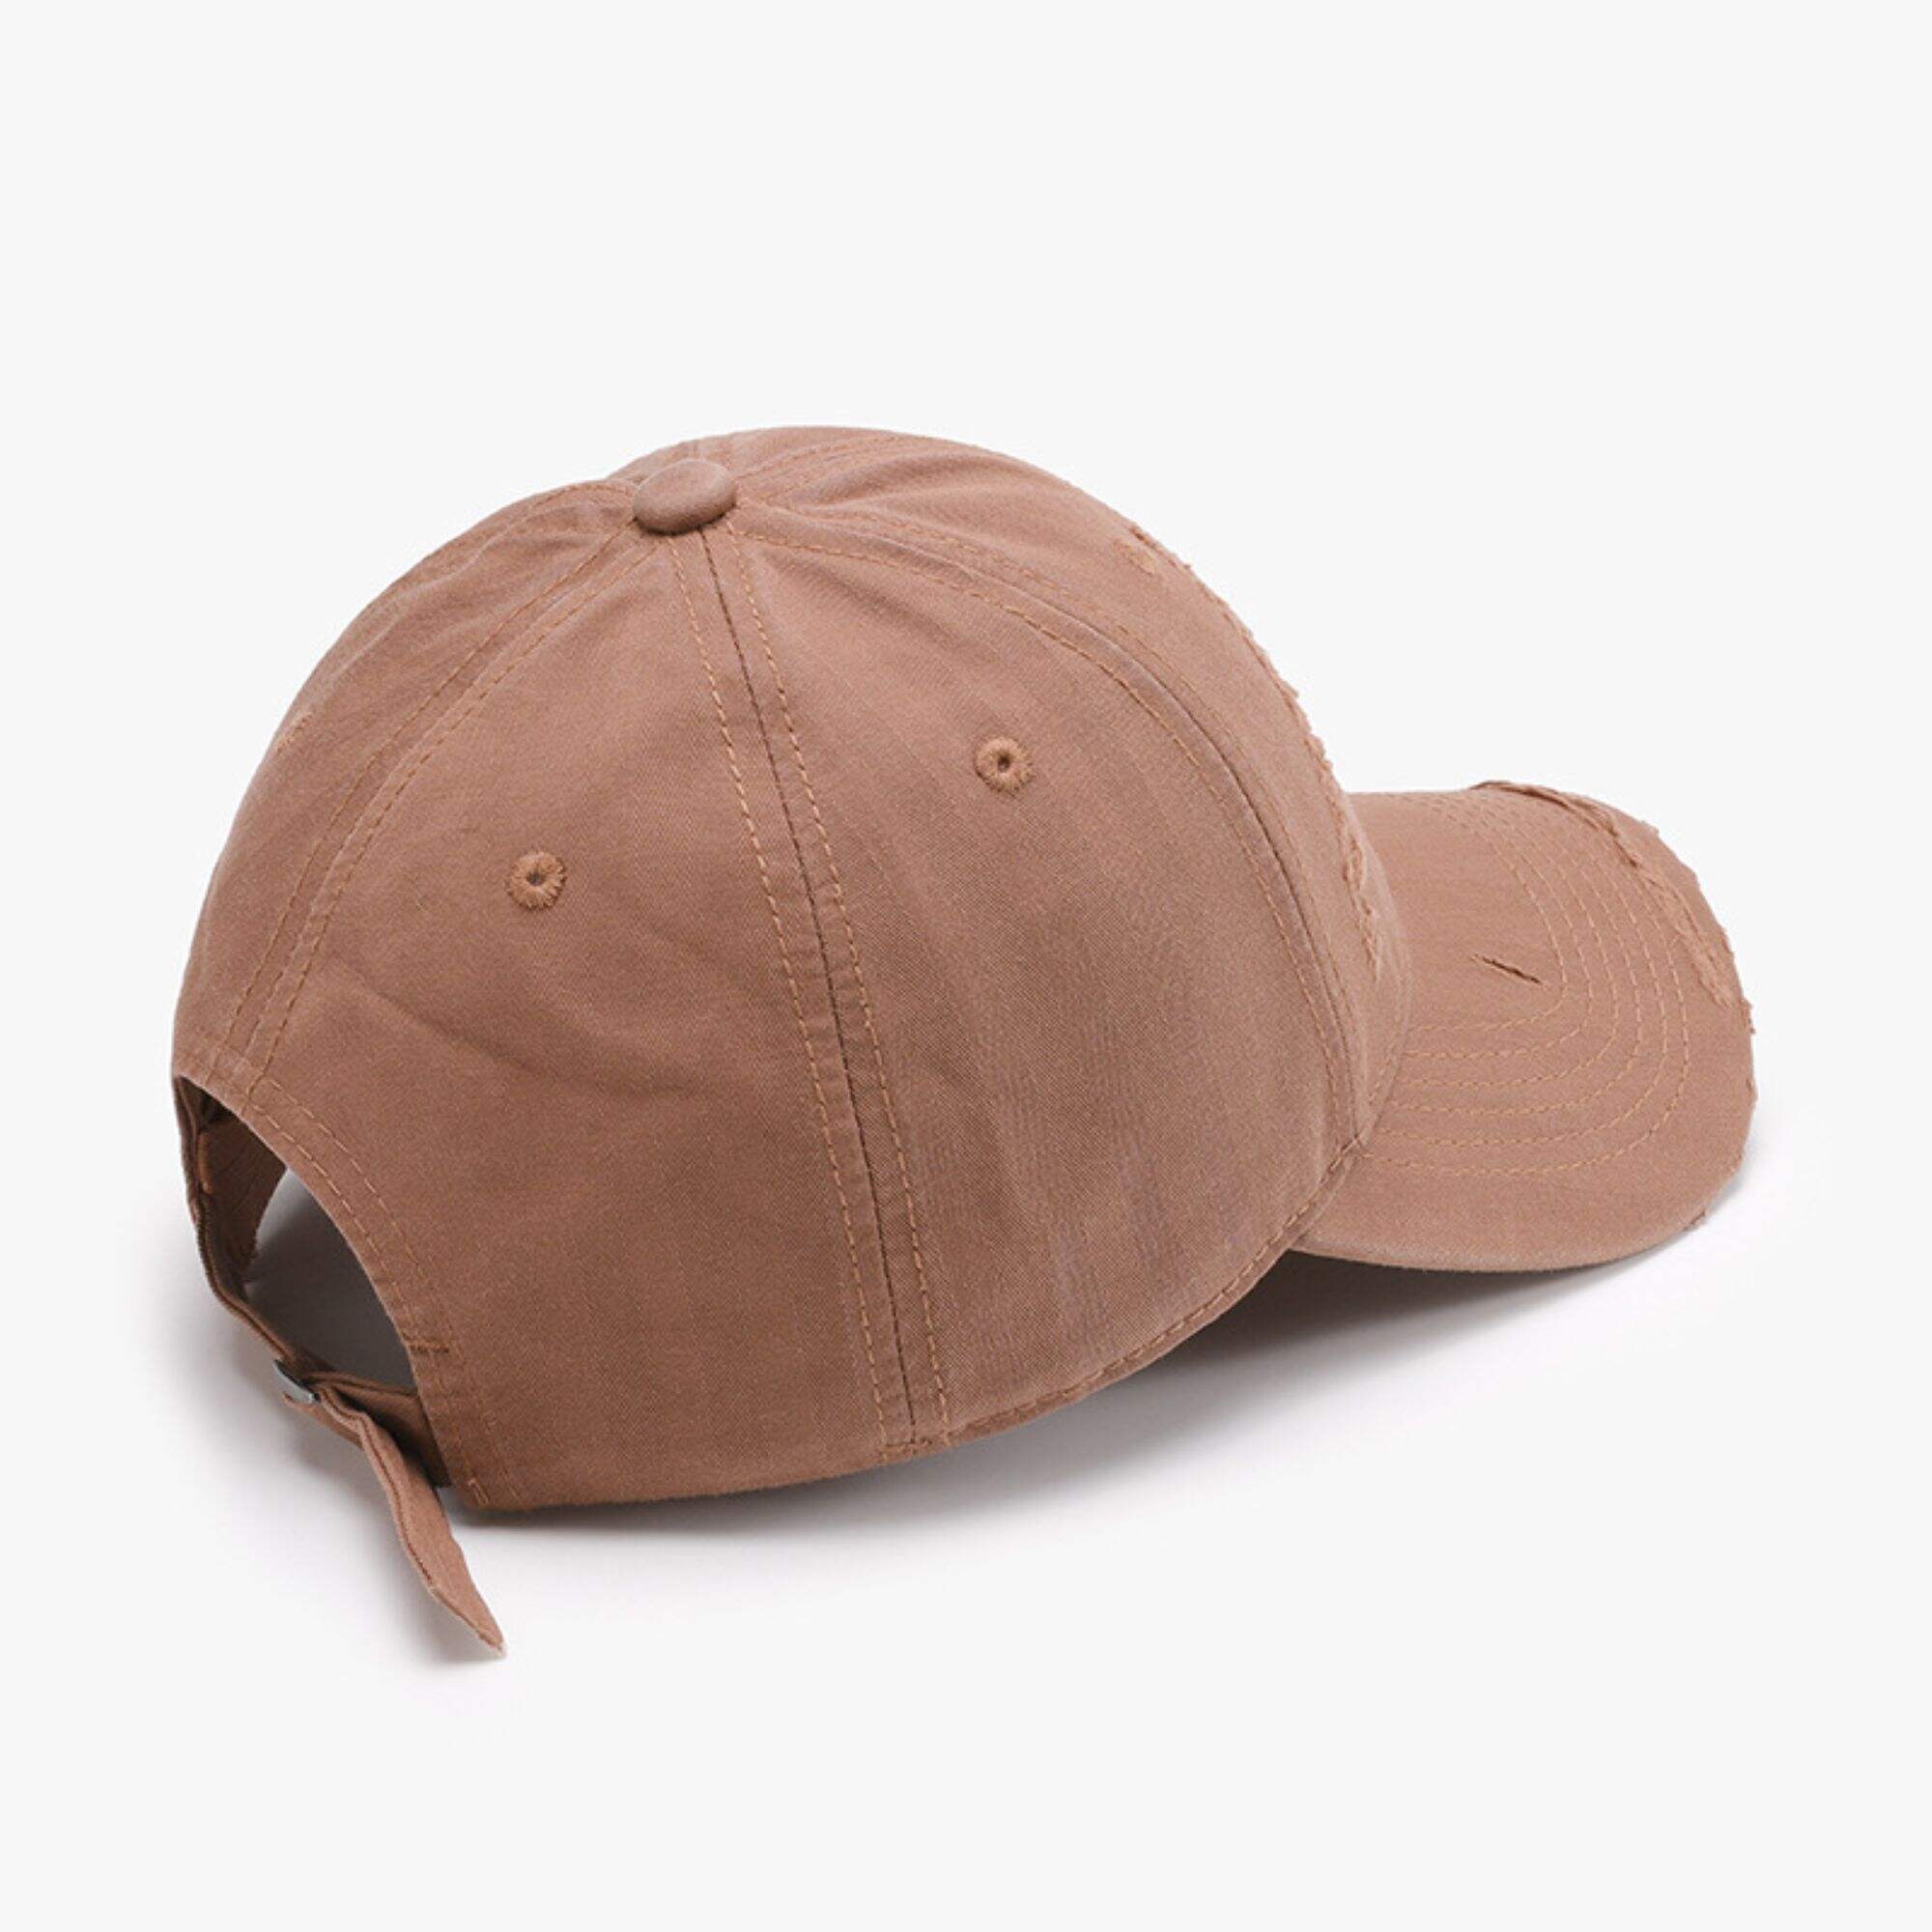 Personalised baseball caps